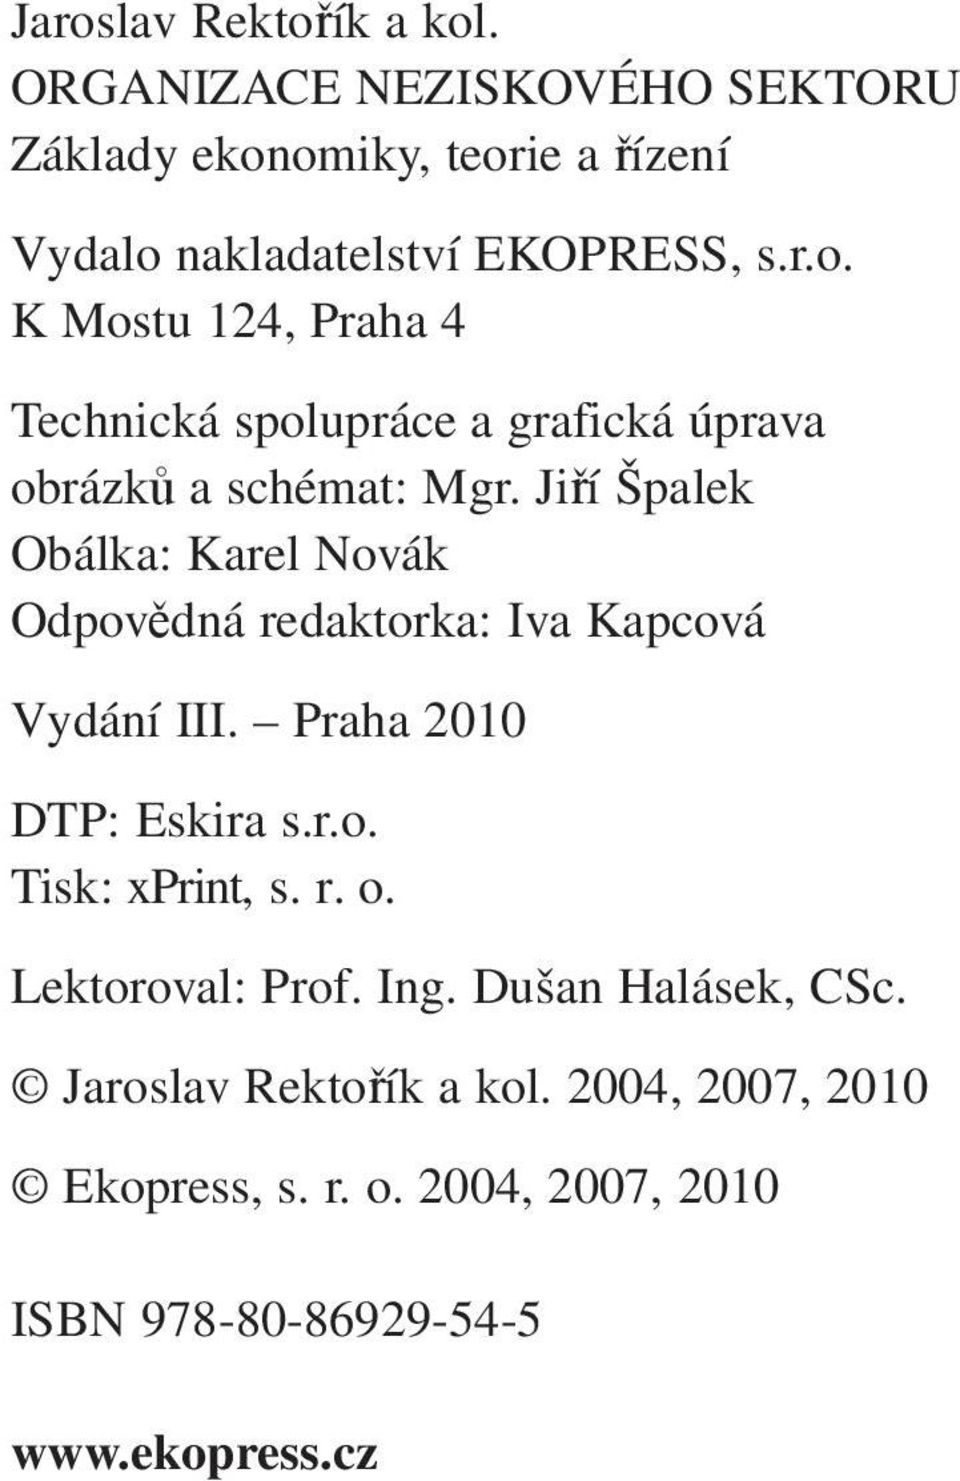 Jiří Špalek Obálka: Karel Novák Odpovědná redaktorka: Iva Kapcová Vydání III. Praha 2010 DTP: Eskira s.r.o. Tisk: xprint, s.